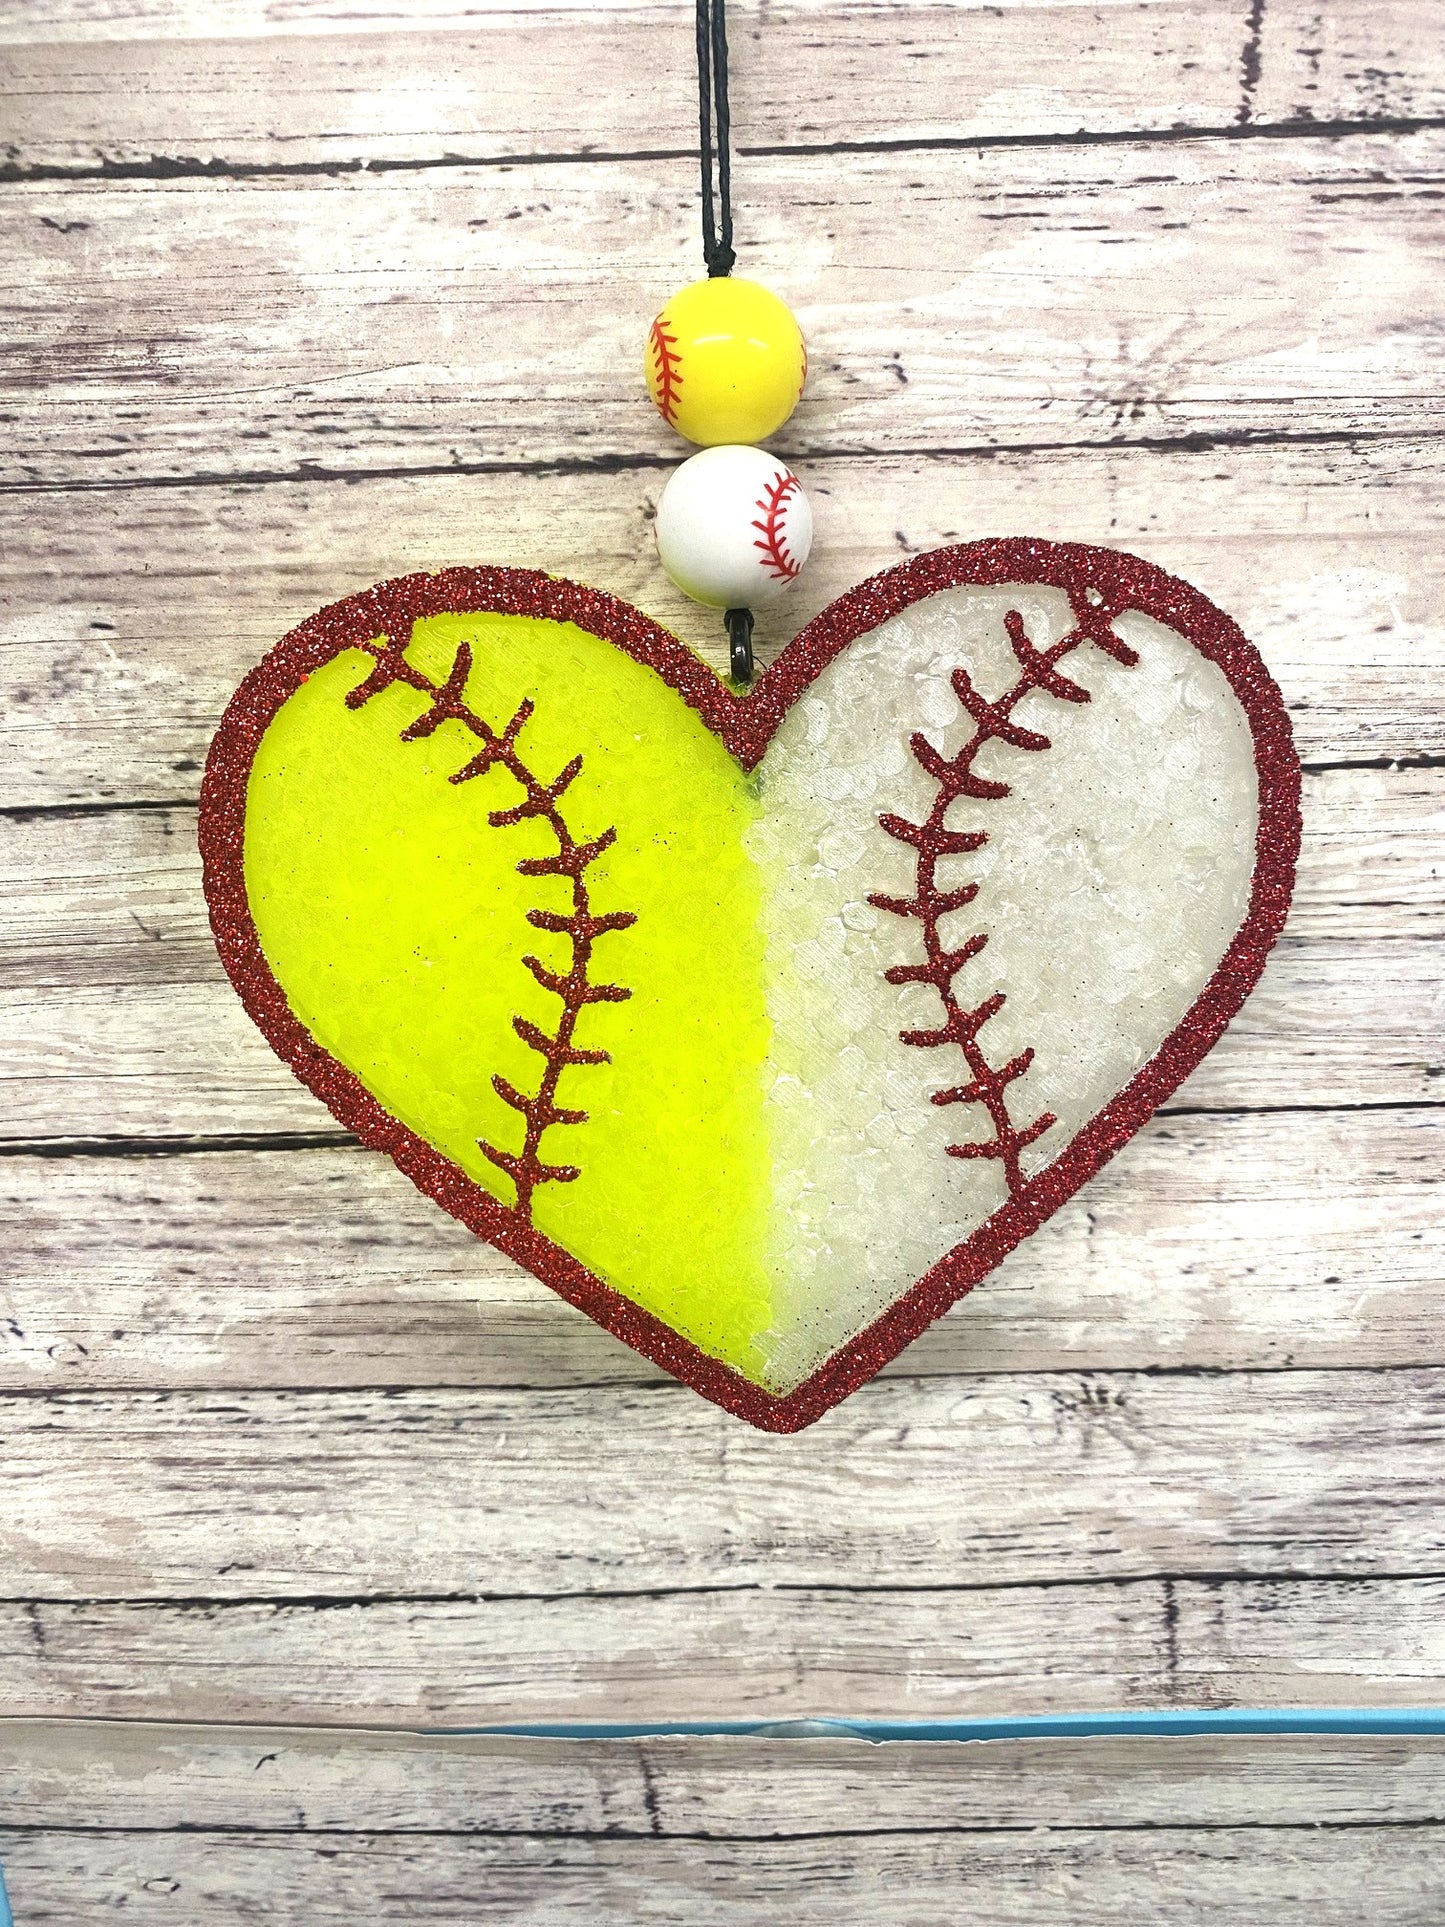 Softball/Baseball Heart - Large